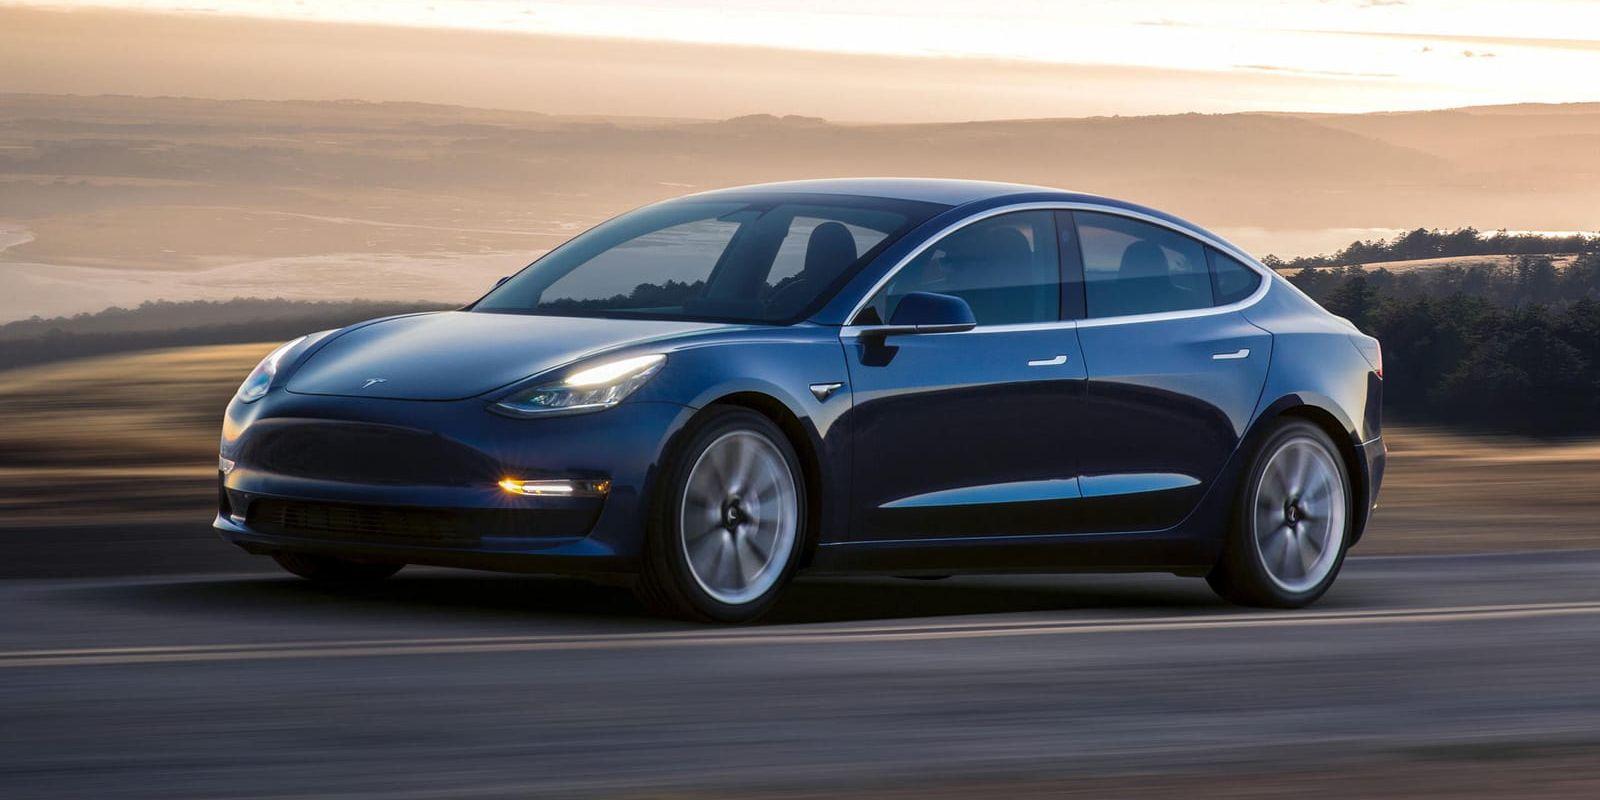 Tillverkningen av Teslas mindre dyra bil, Model 3, har kinkat.